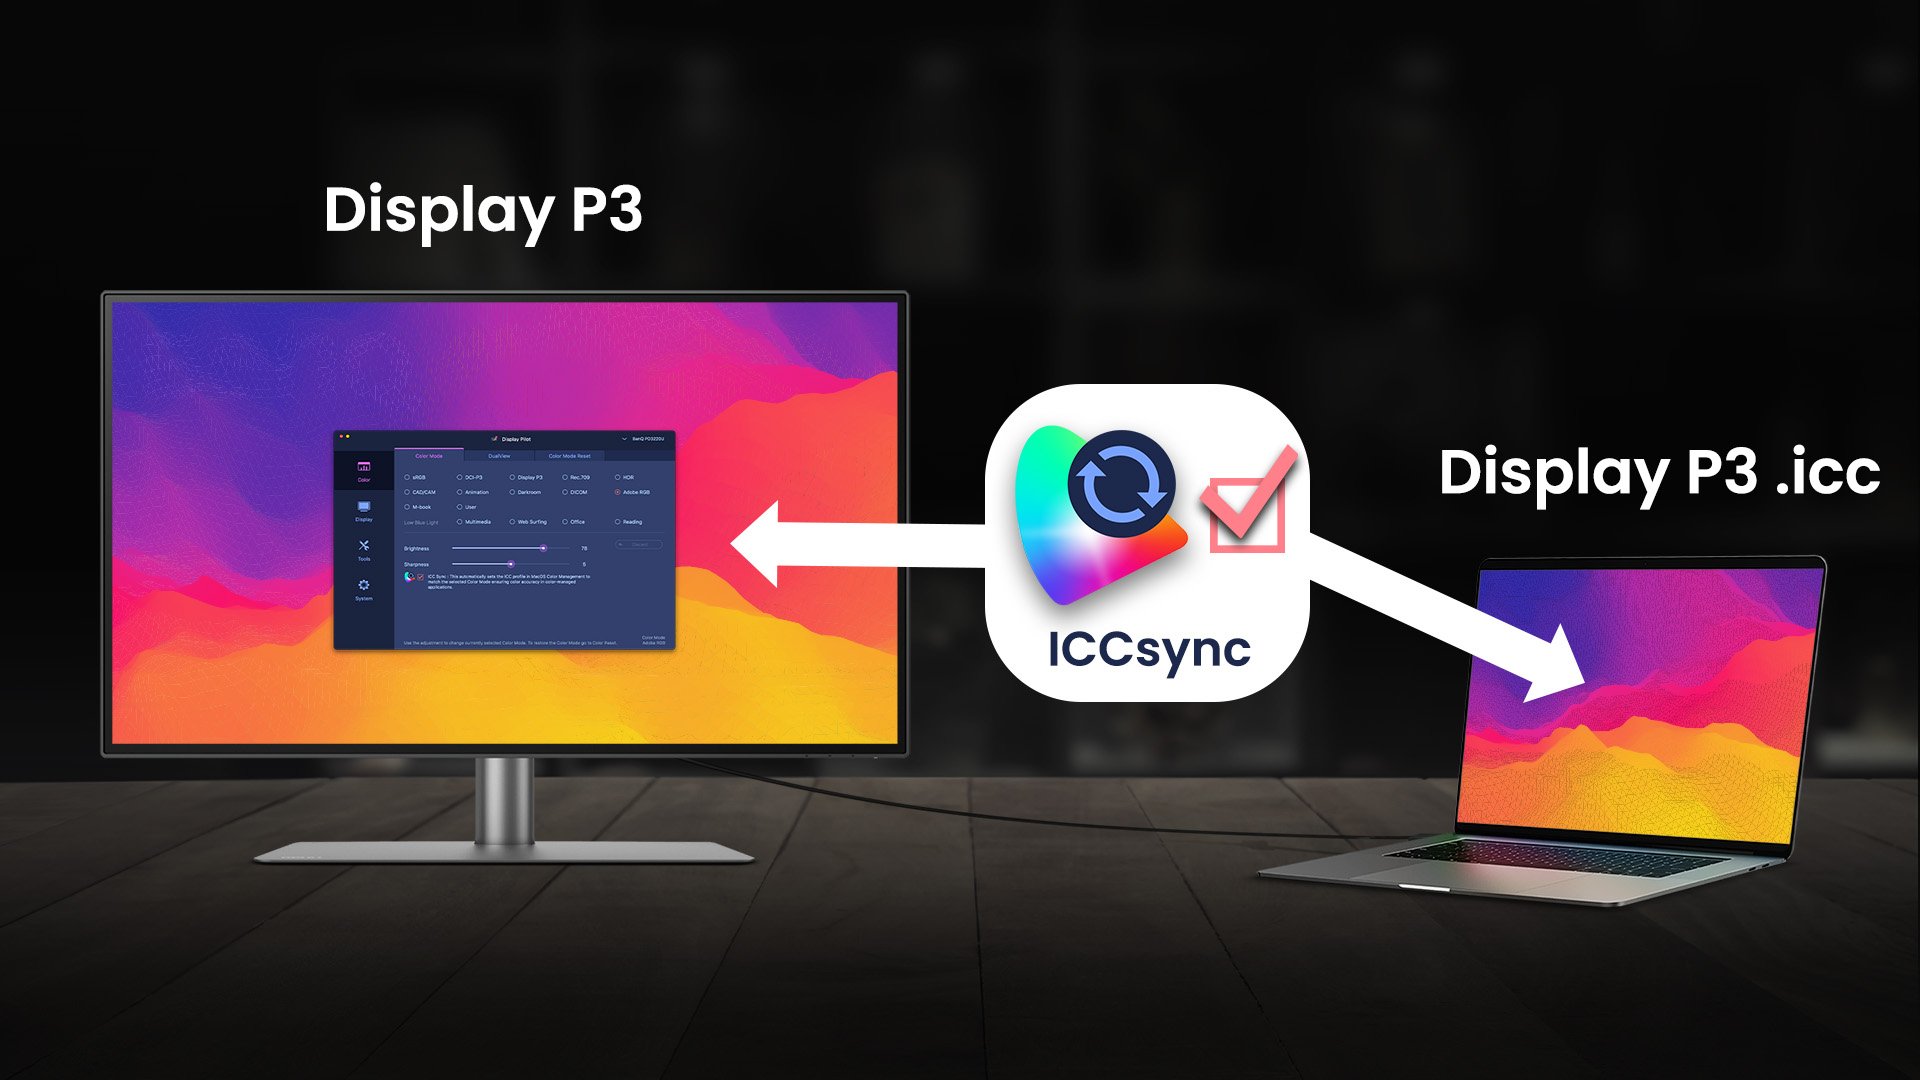 Oferim o funcţie numită ICCsync, astfel încât, chiar dacă nu aliniaţi manual profilurile ICC atunci când comutaţi între aplicaţii, sincronizarea se poate face în câteva secunde. ICCsync potriveşte şi sincronizează automat profilurile de pe monitor între aplicaţii şi programe, dar şi atunci când treceţi de la un MacBook sau alt dispozitiv Mac la ecranul BenQ mai mare. Cu această sincronizare automată a profilului ICC, economisiţi timp şi creşteţi acurateţea imaginii. 